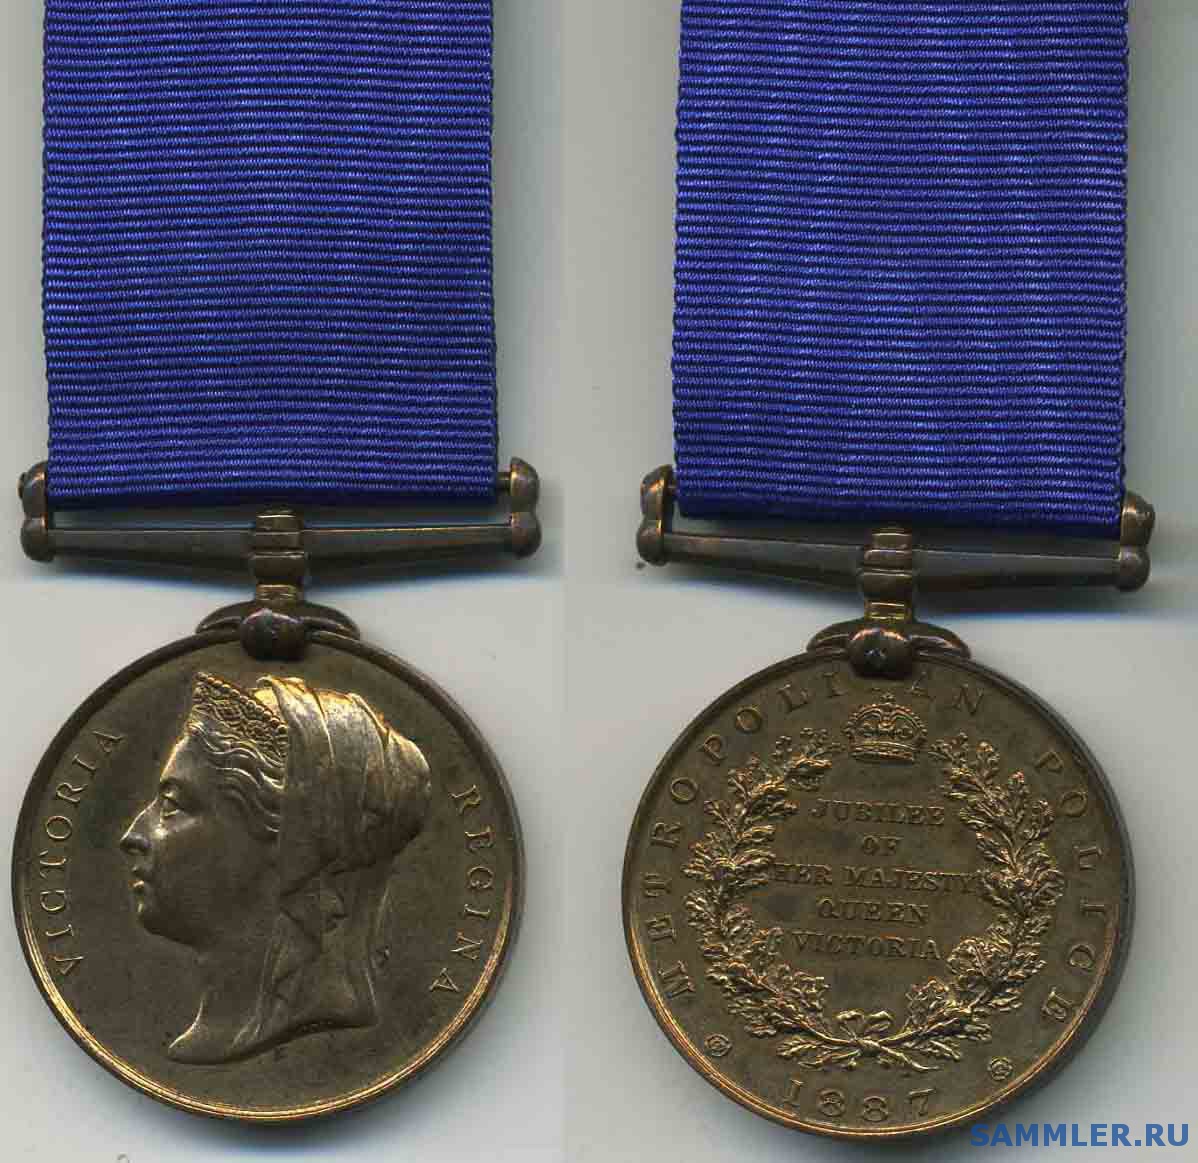 Jubilee_Medal_Police__1887.jpg